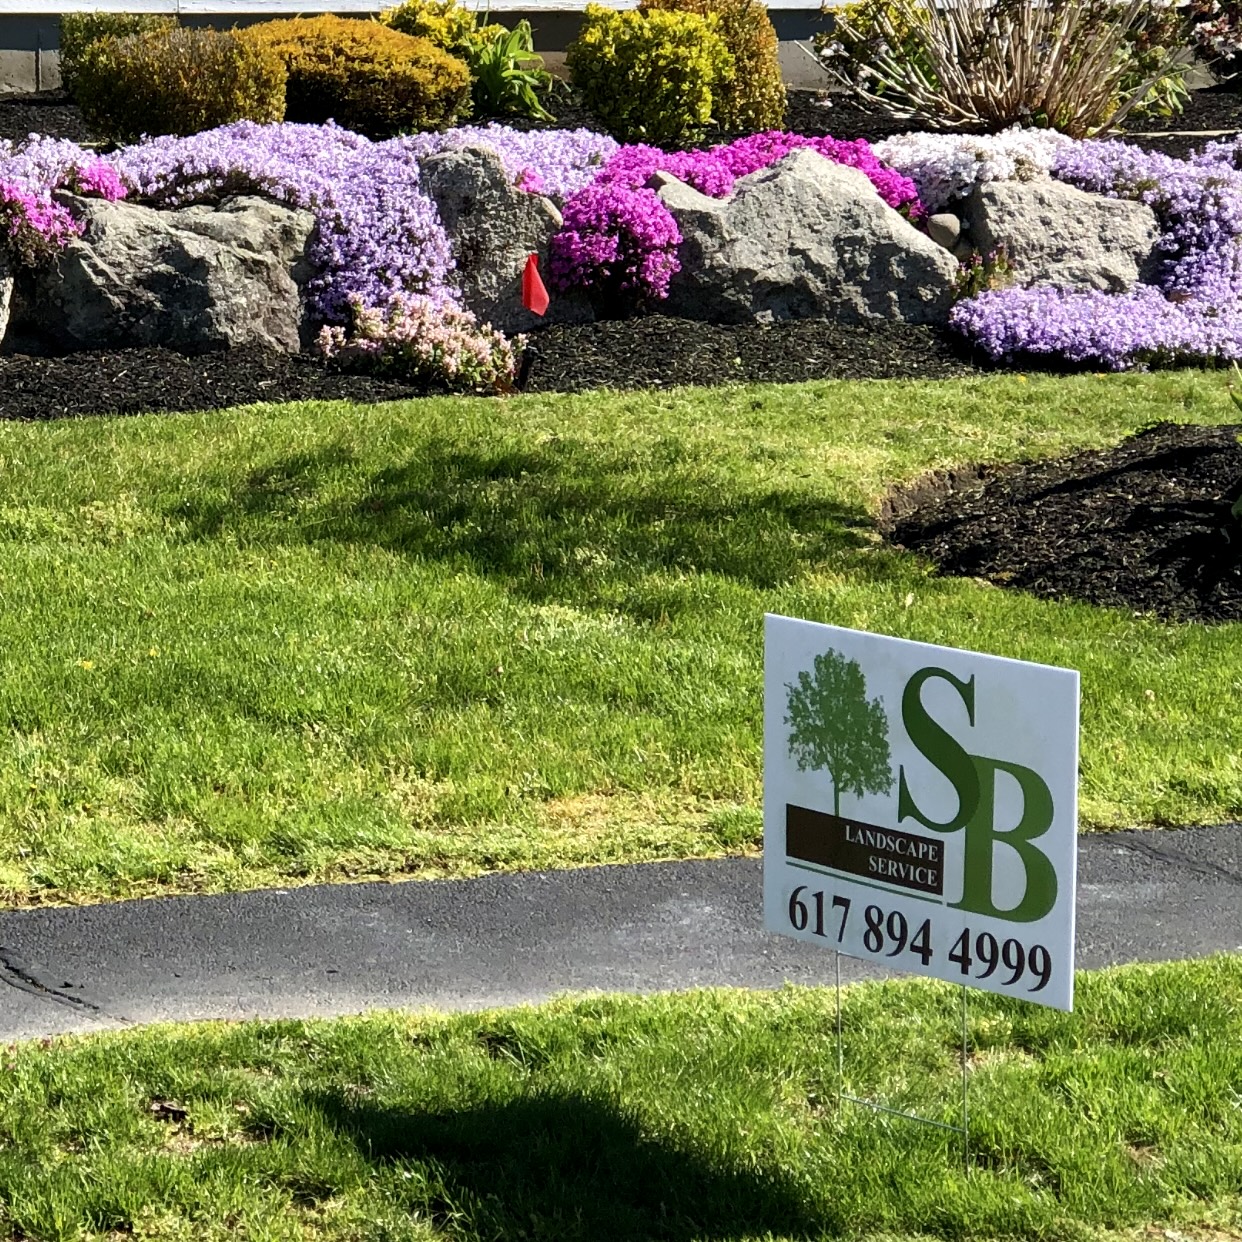 SB Landscape Services Inc.